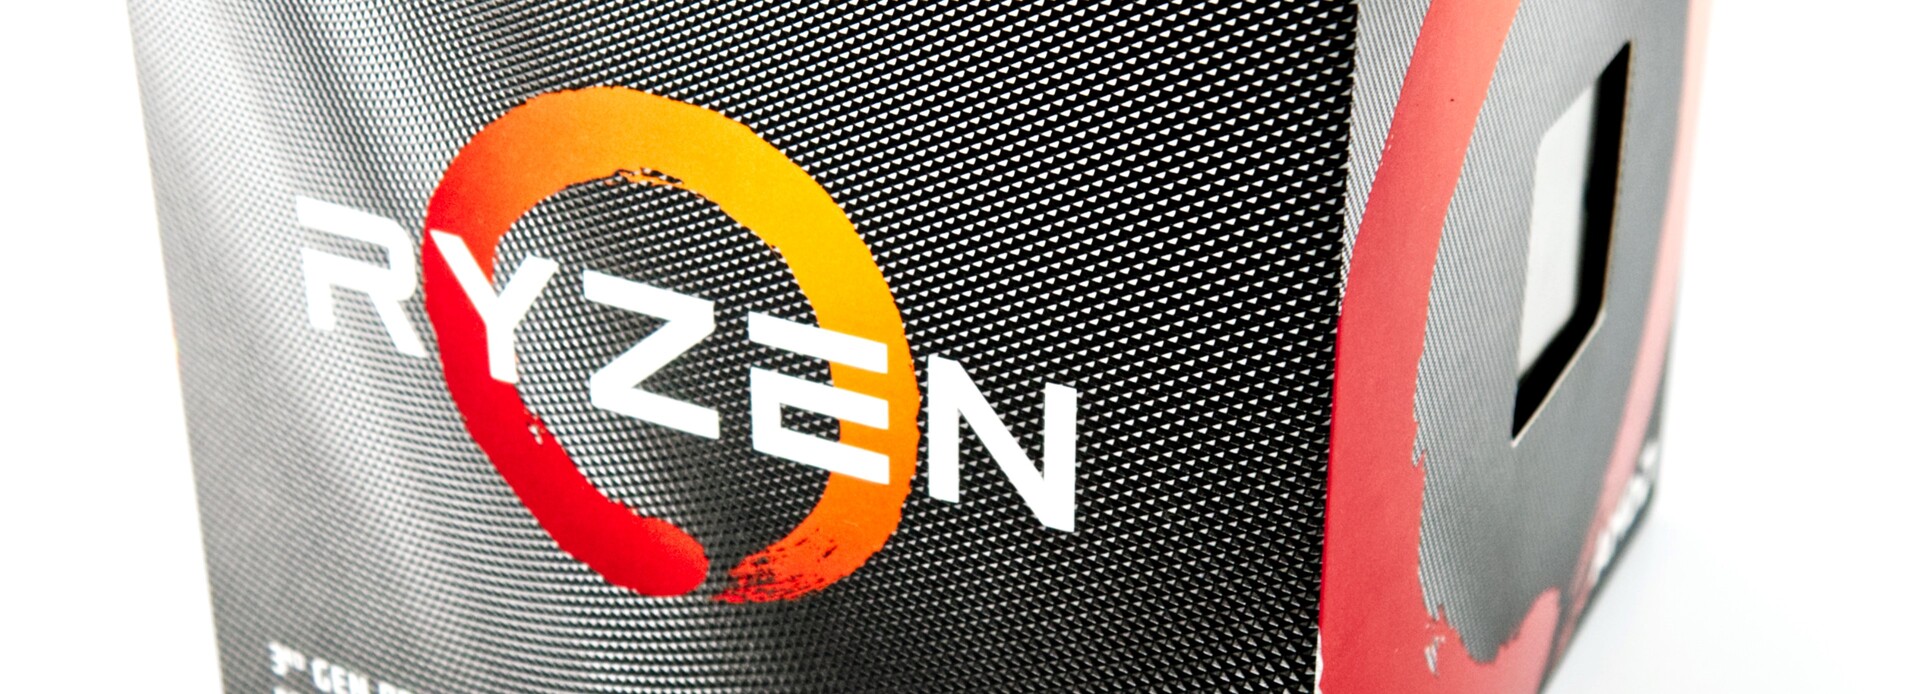 Review de la CPU de escritorio AMD Ryzen 7 3700X: Un frugal procesador de 8  núcleos y 16 hilos - Notebookcheck.org